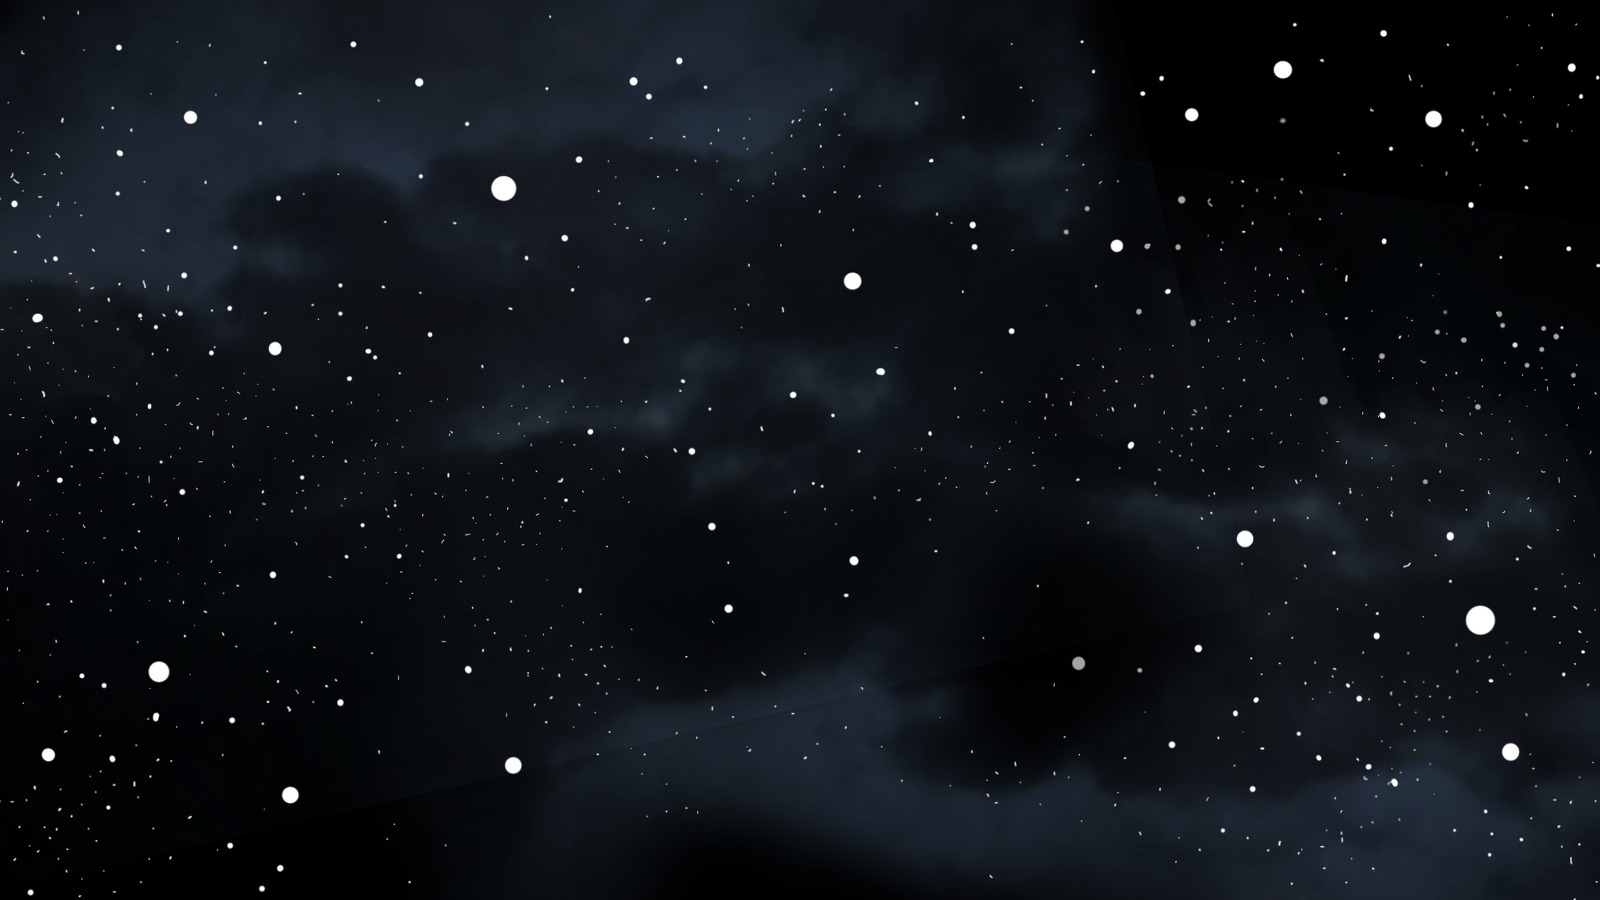 背景黑色星空天空设计素材夜空闪烁星空背景高清图片 Canva可画